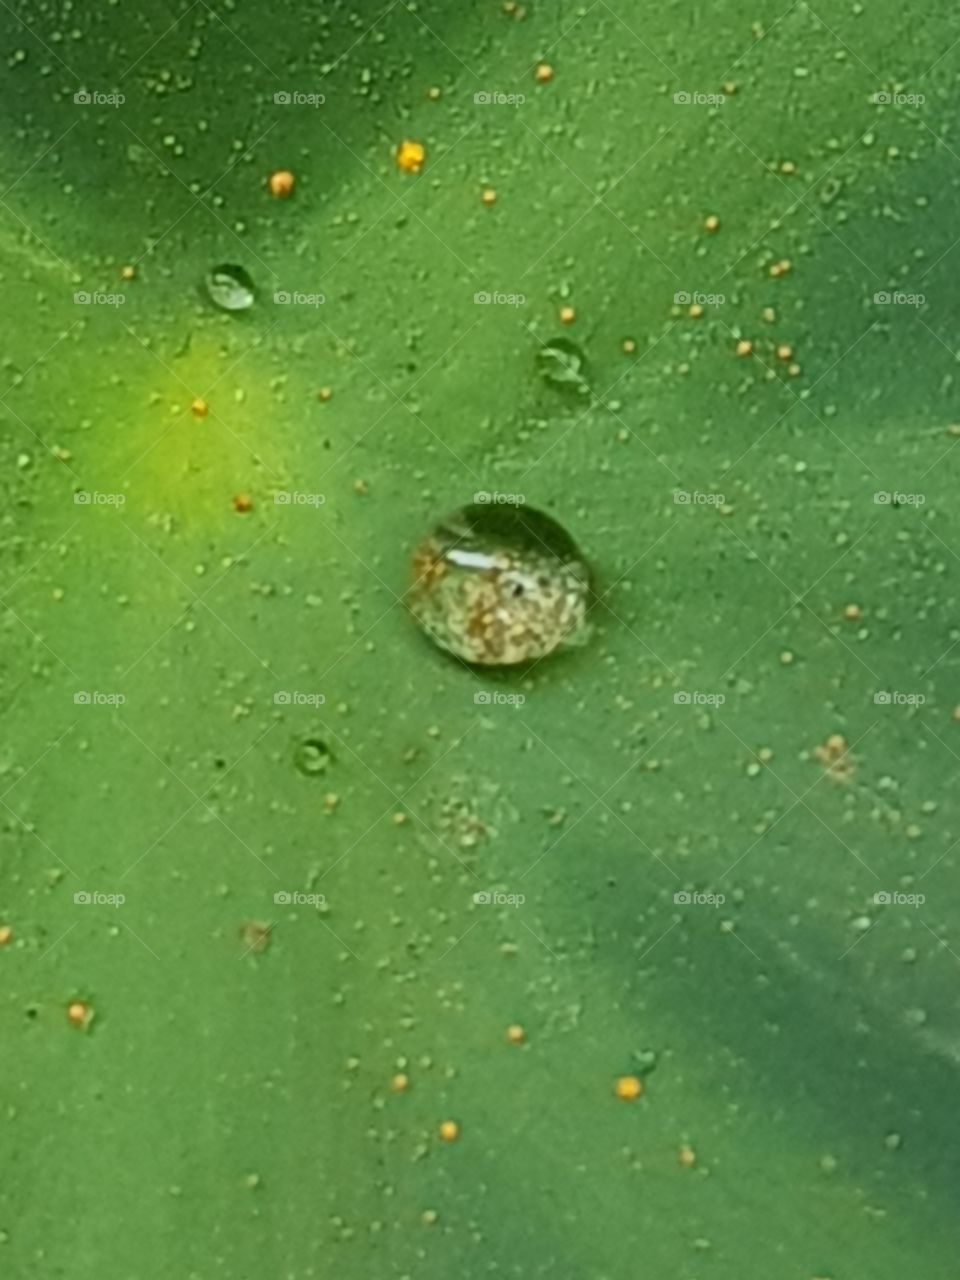 Water Droplet On a Lotus Leaf